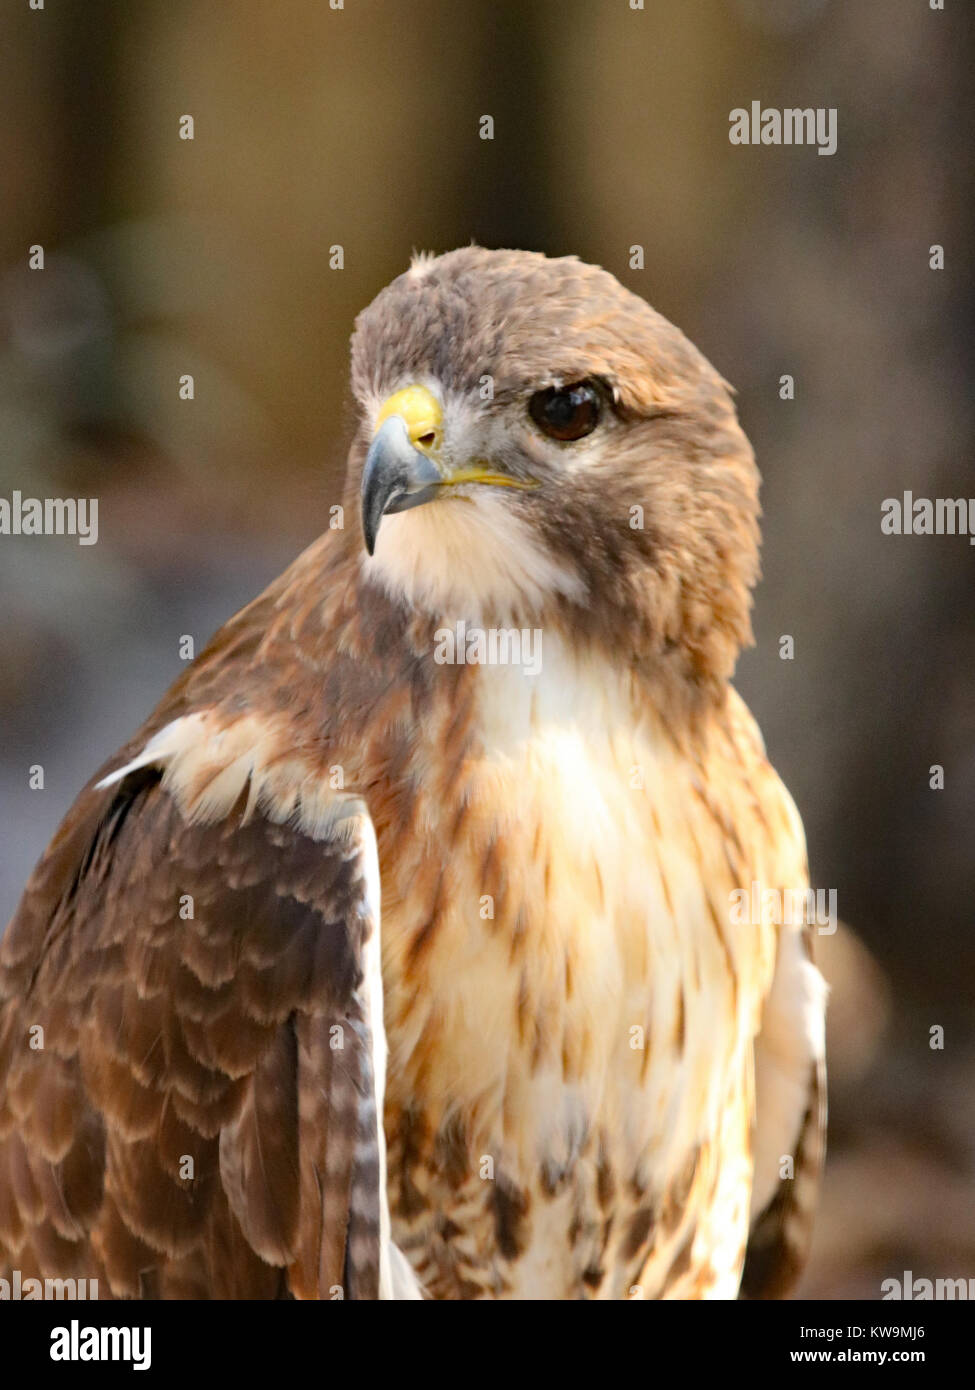 Cooper's hawk (Accipiter cooperii) in profile Stock Photo